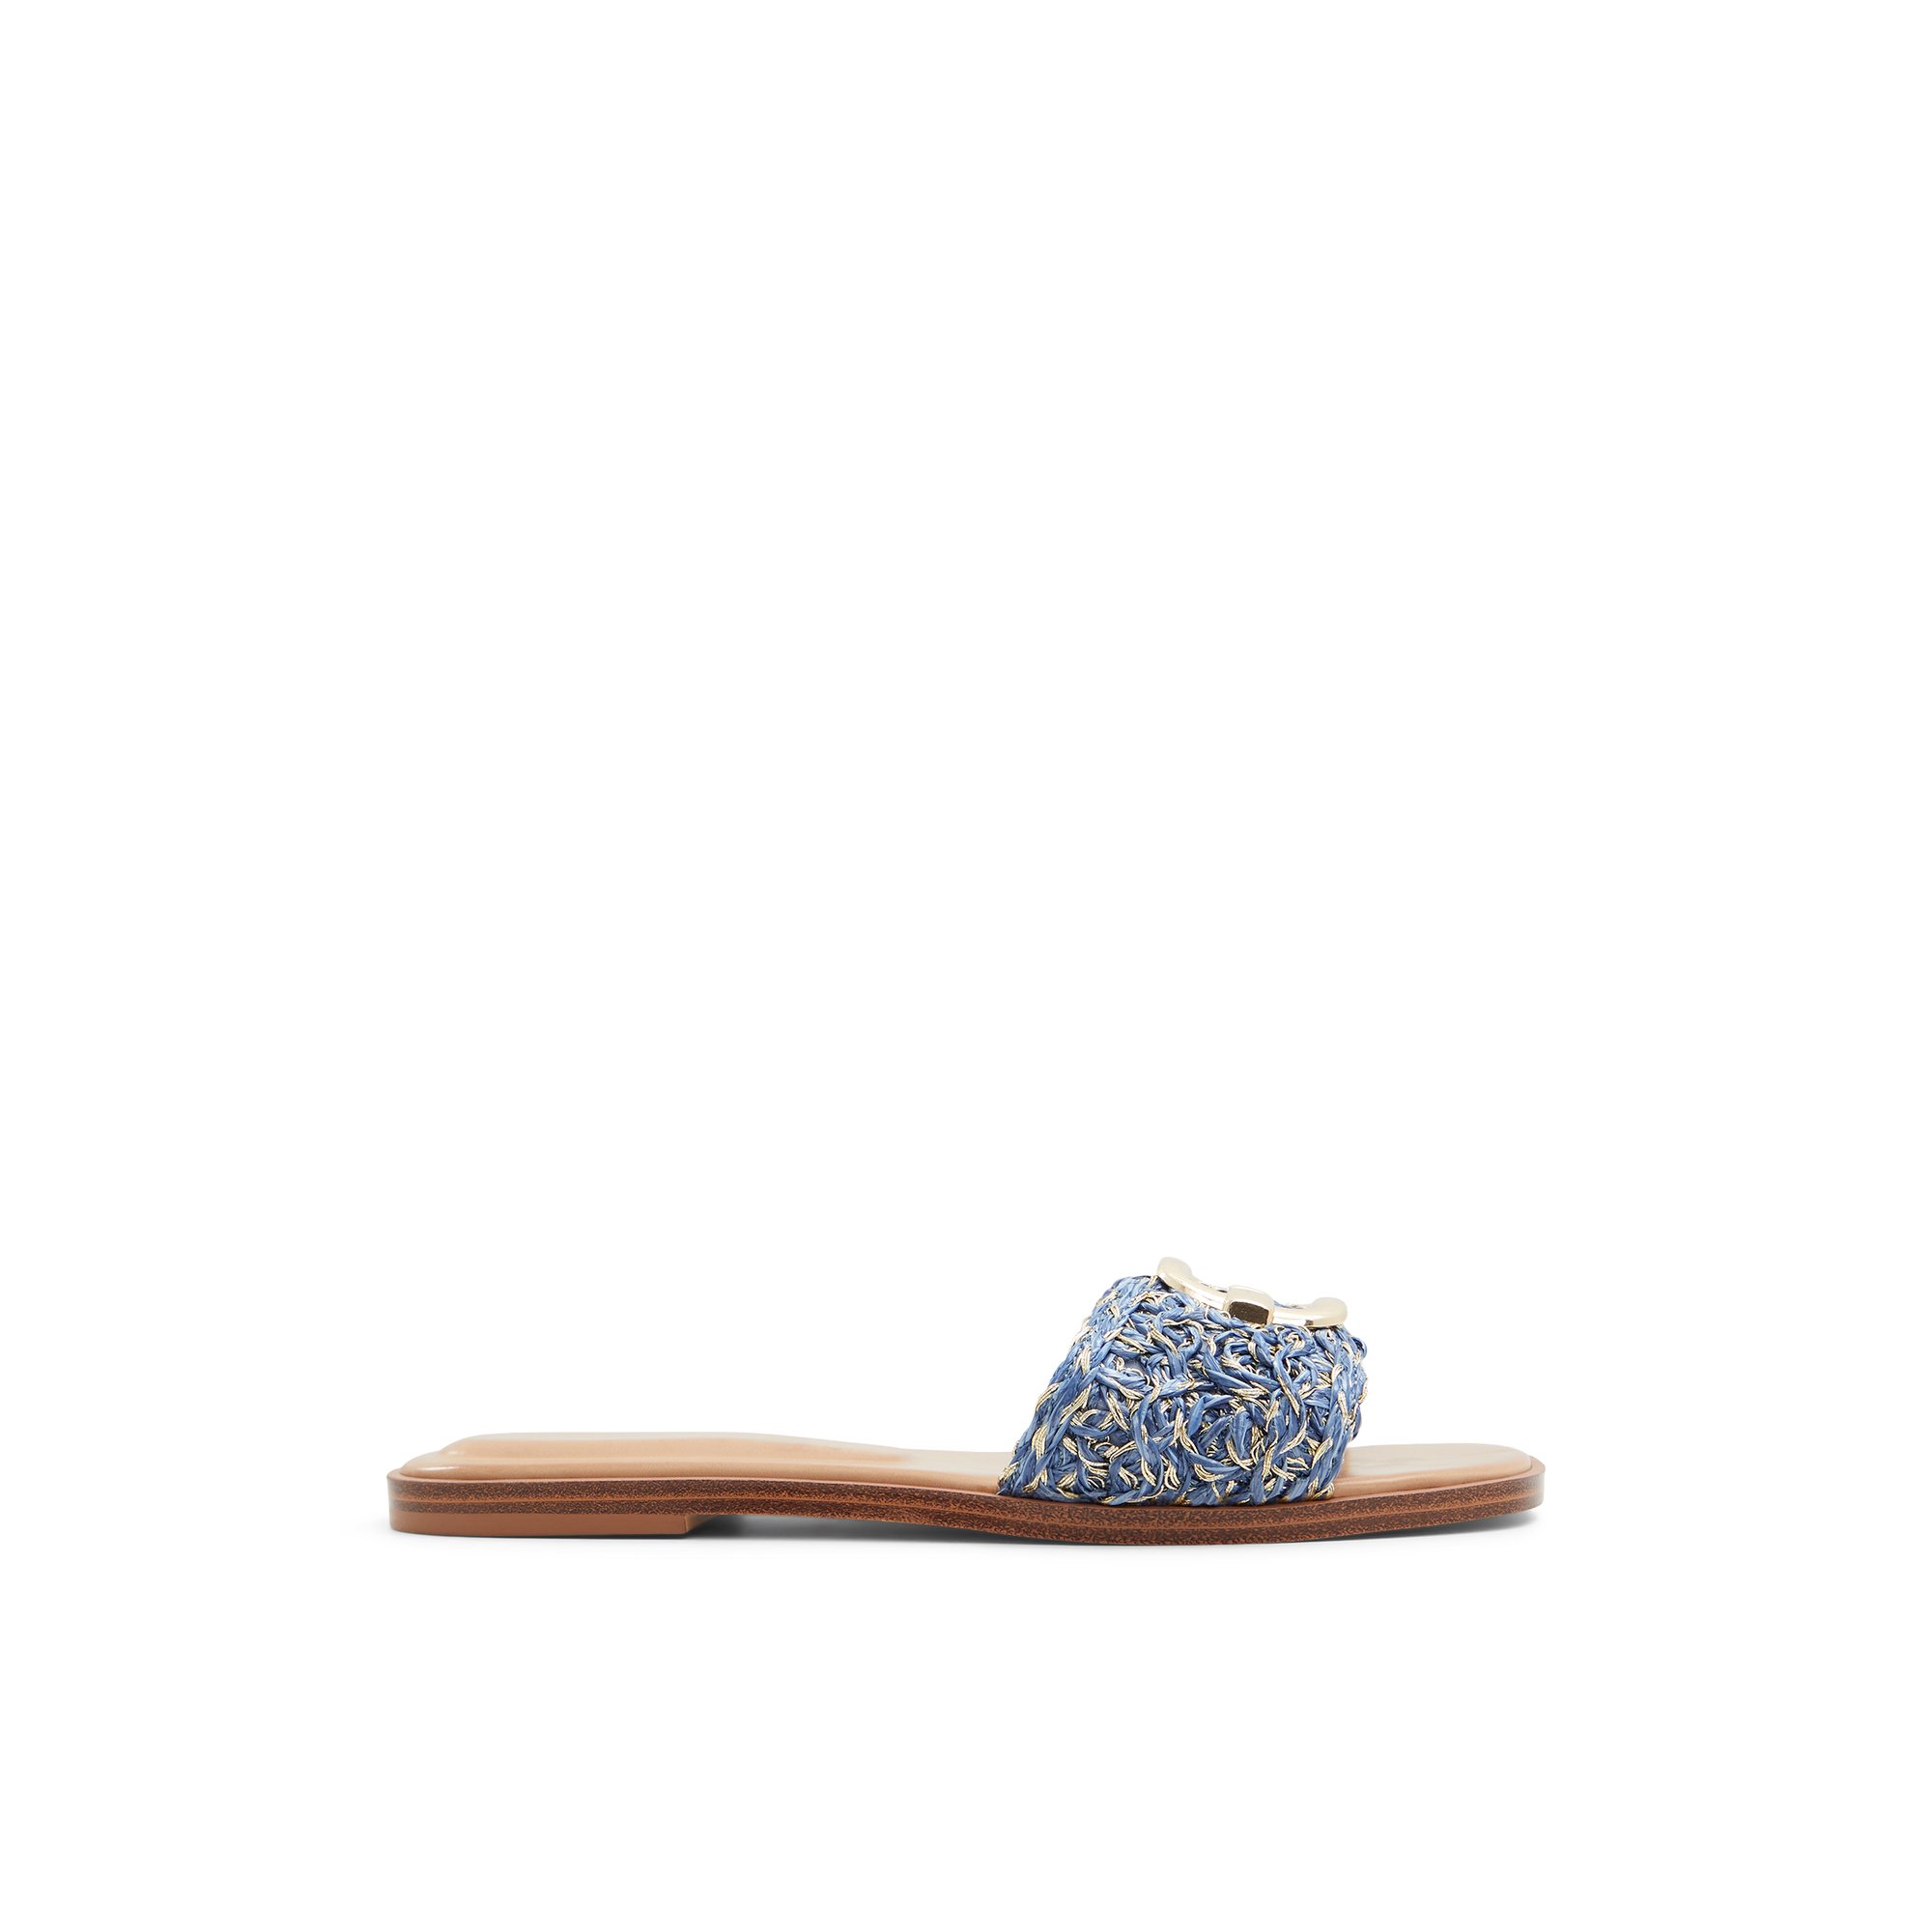 ALDO Glaeswen - Women's Flat Sandals - Blue